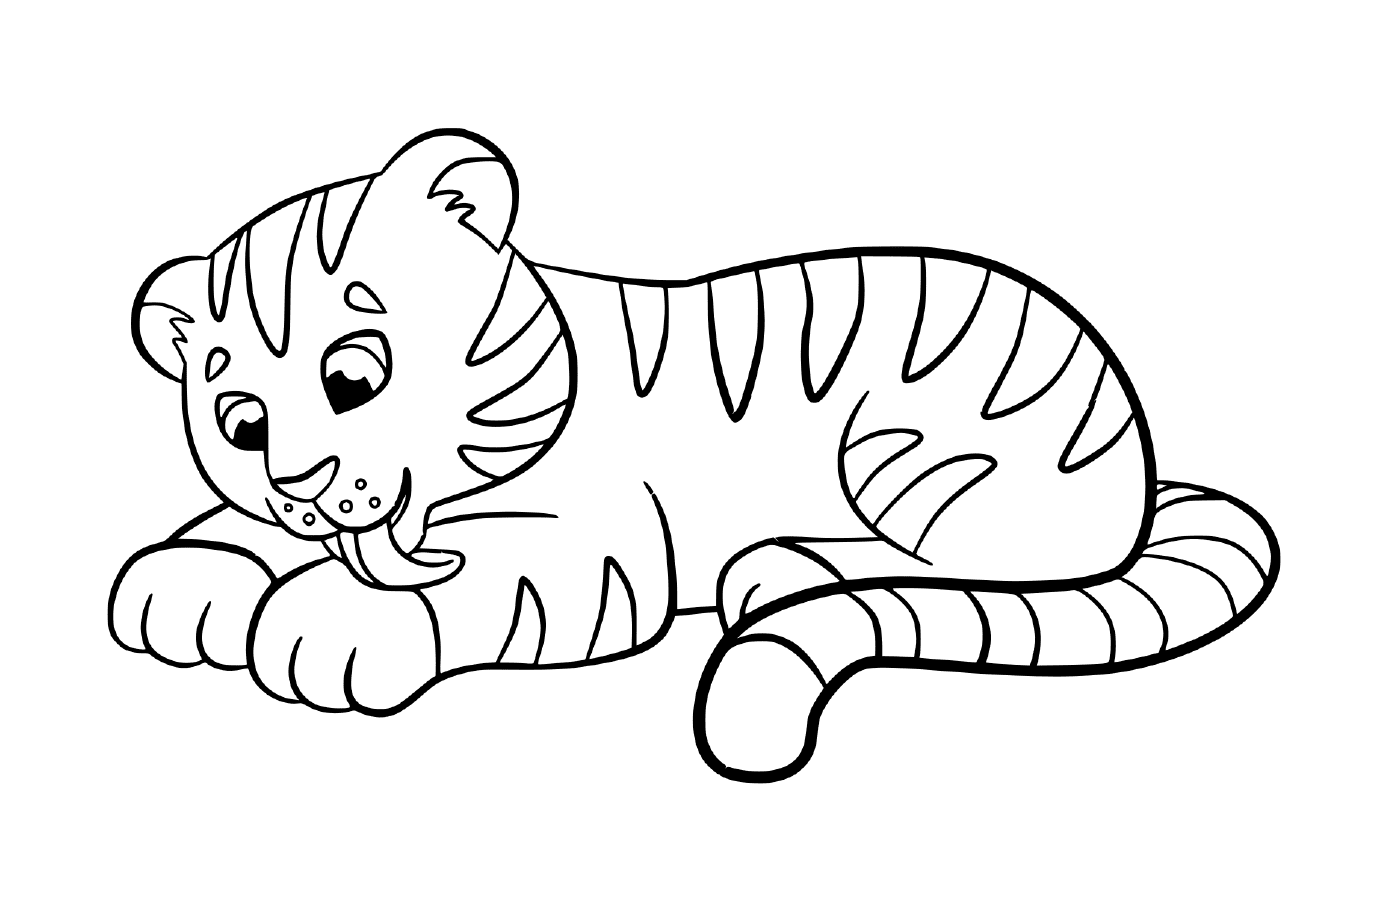  एक प्यारा और कावाई बाघ का बच्चा 